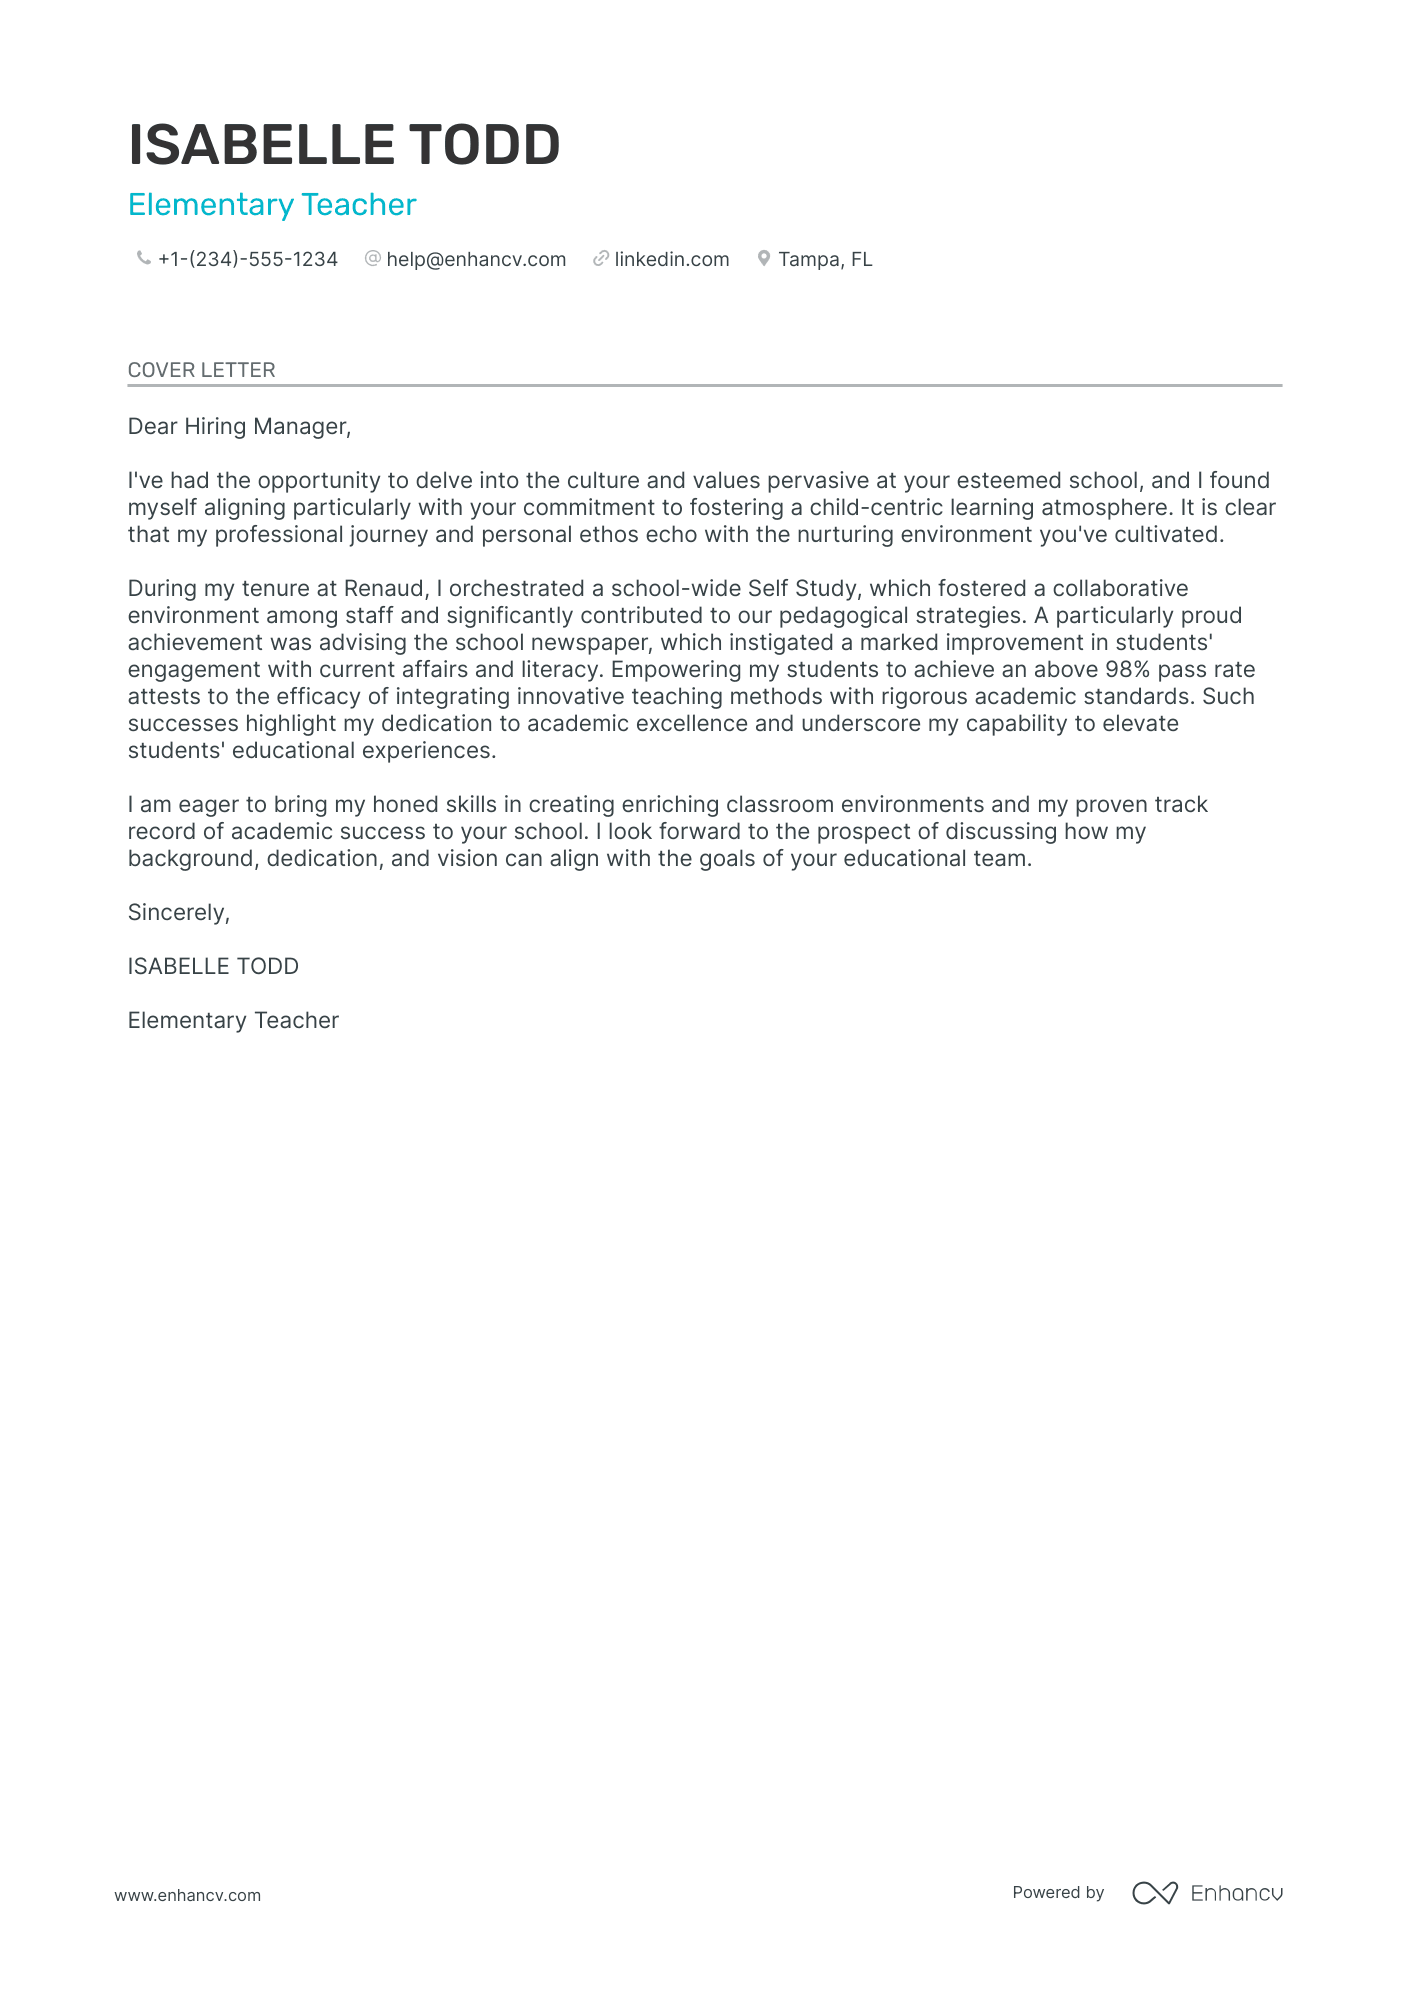 Elementary Teacher cover letter